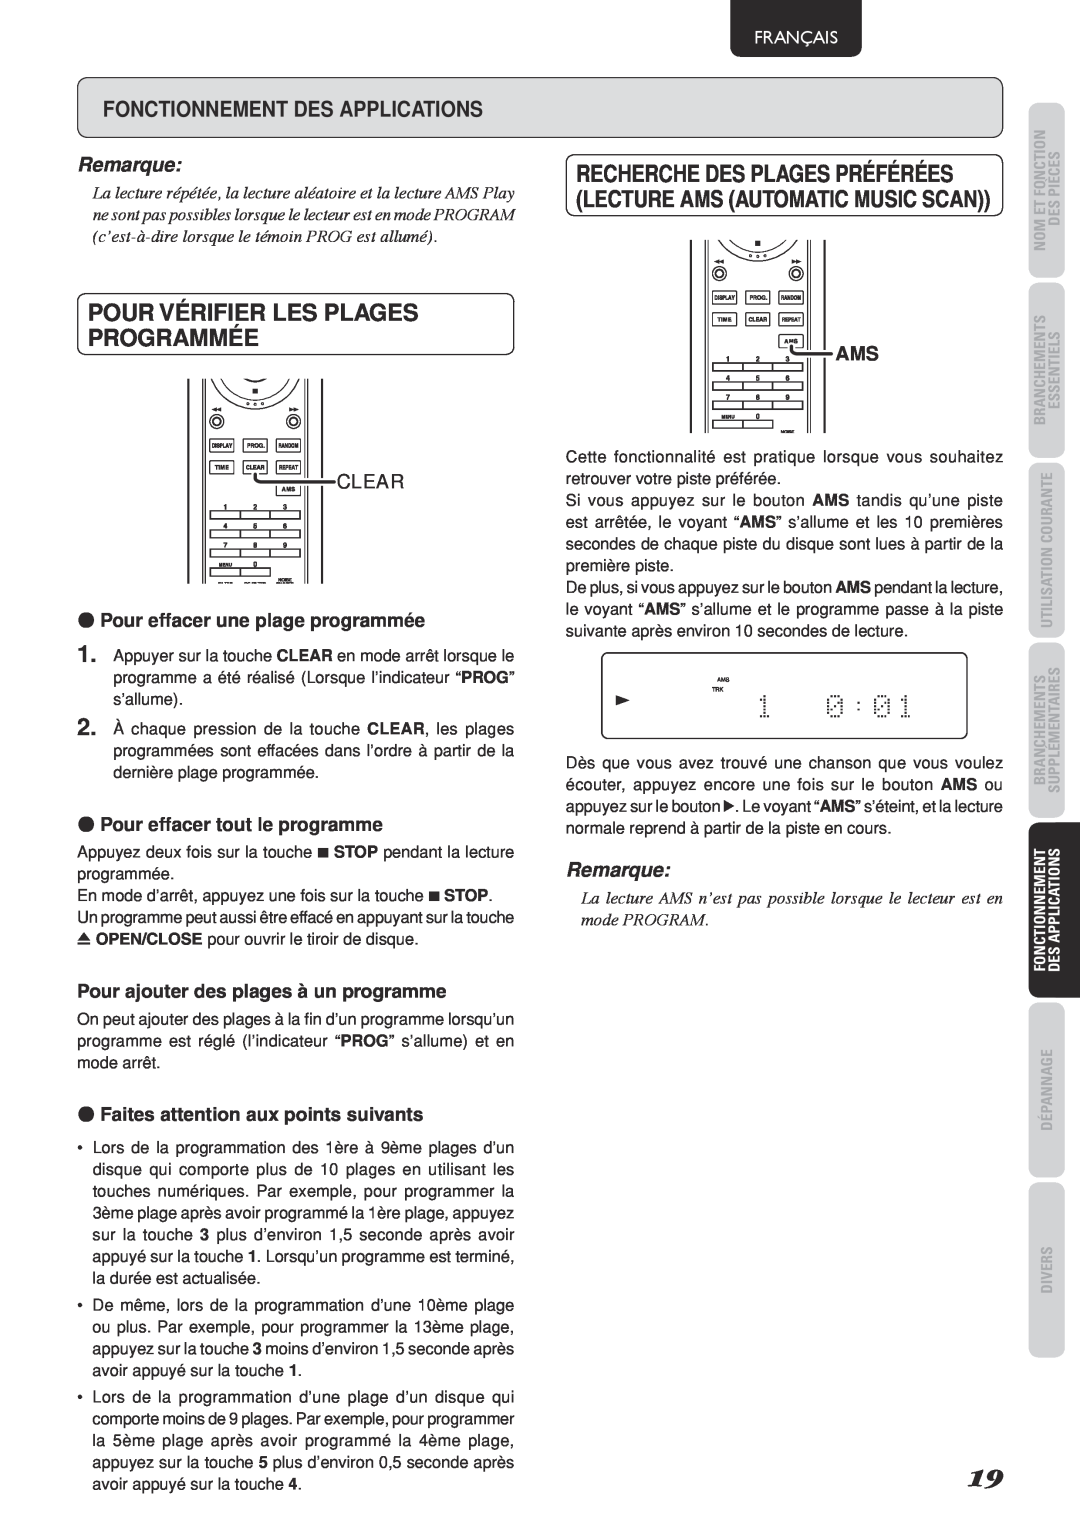 Marantz SA-15S2 manual Pour vérifier les plages programmée, Recherche Des Plages Préférées, Fonctionnement des applications 